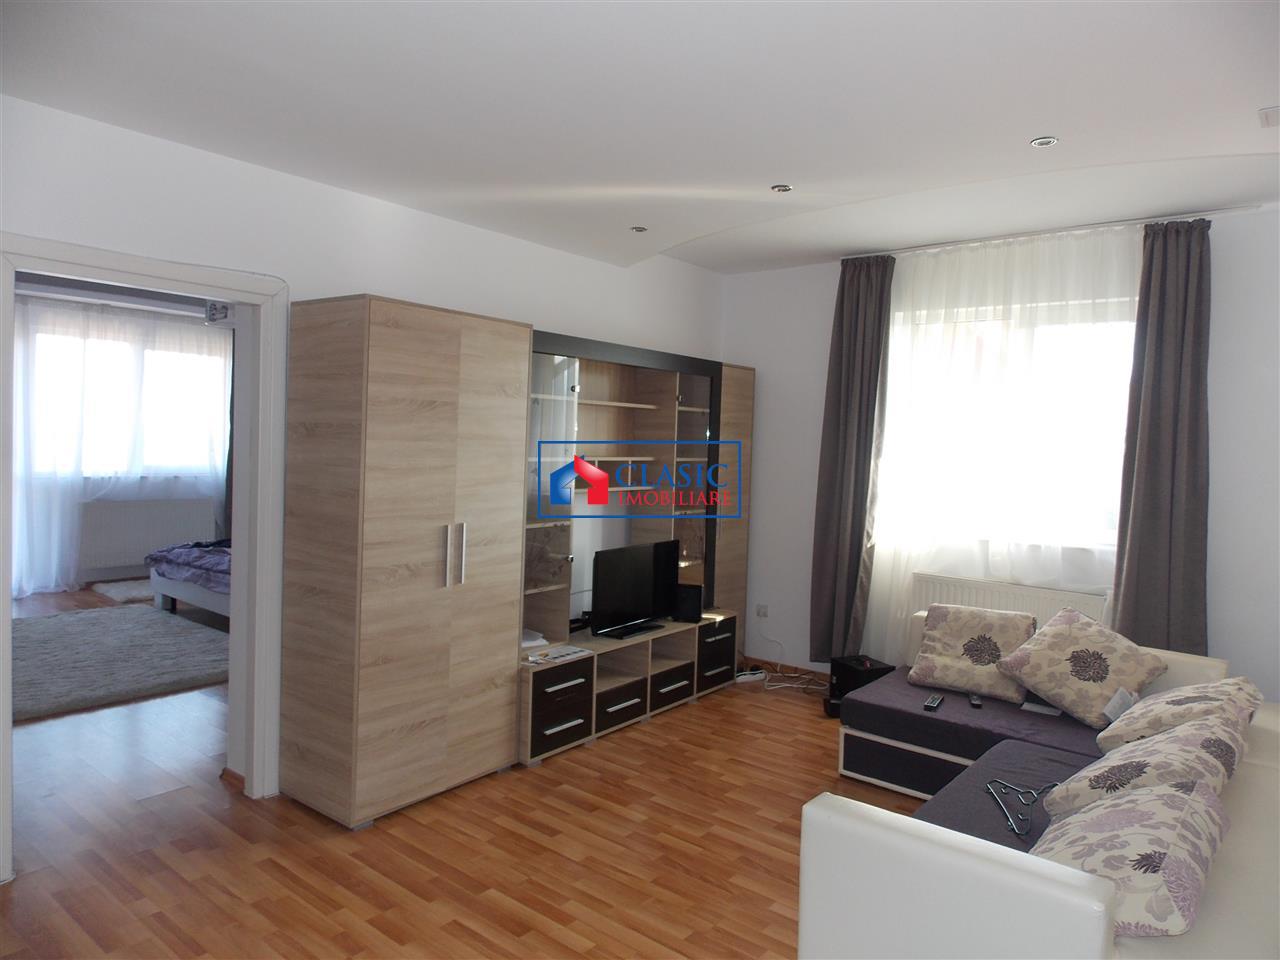 Inchiriere apartament 3 camere modern in Andrei Muresanu  zona Engels